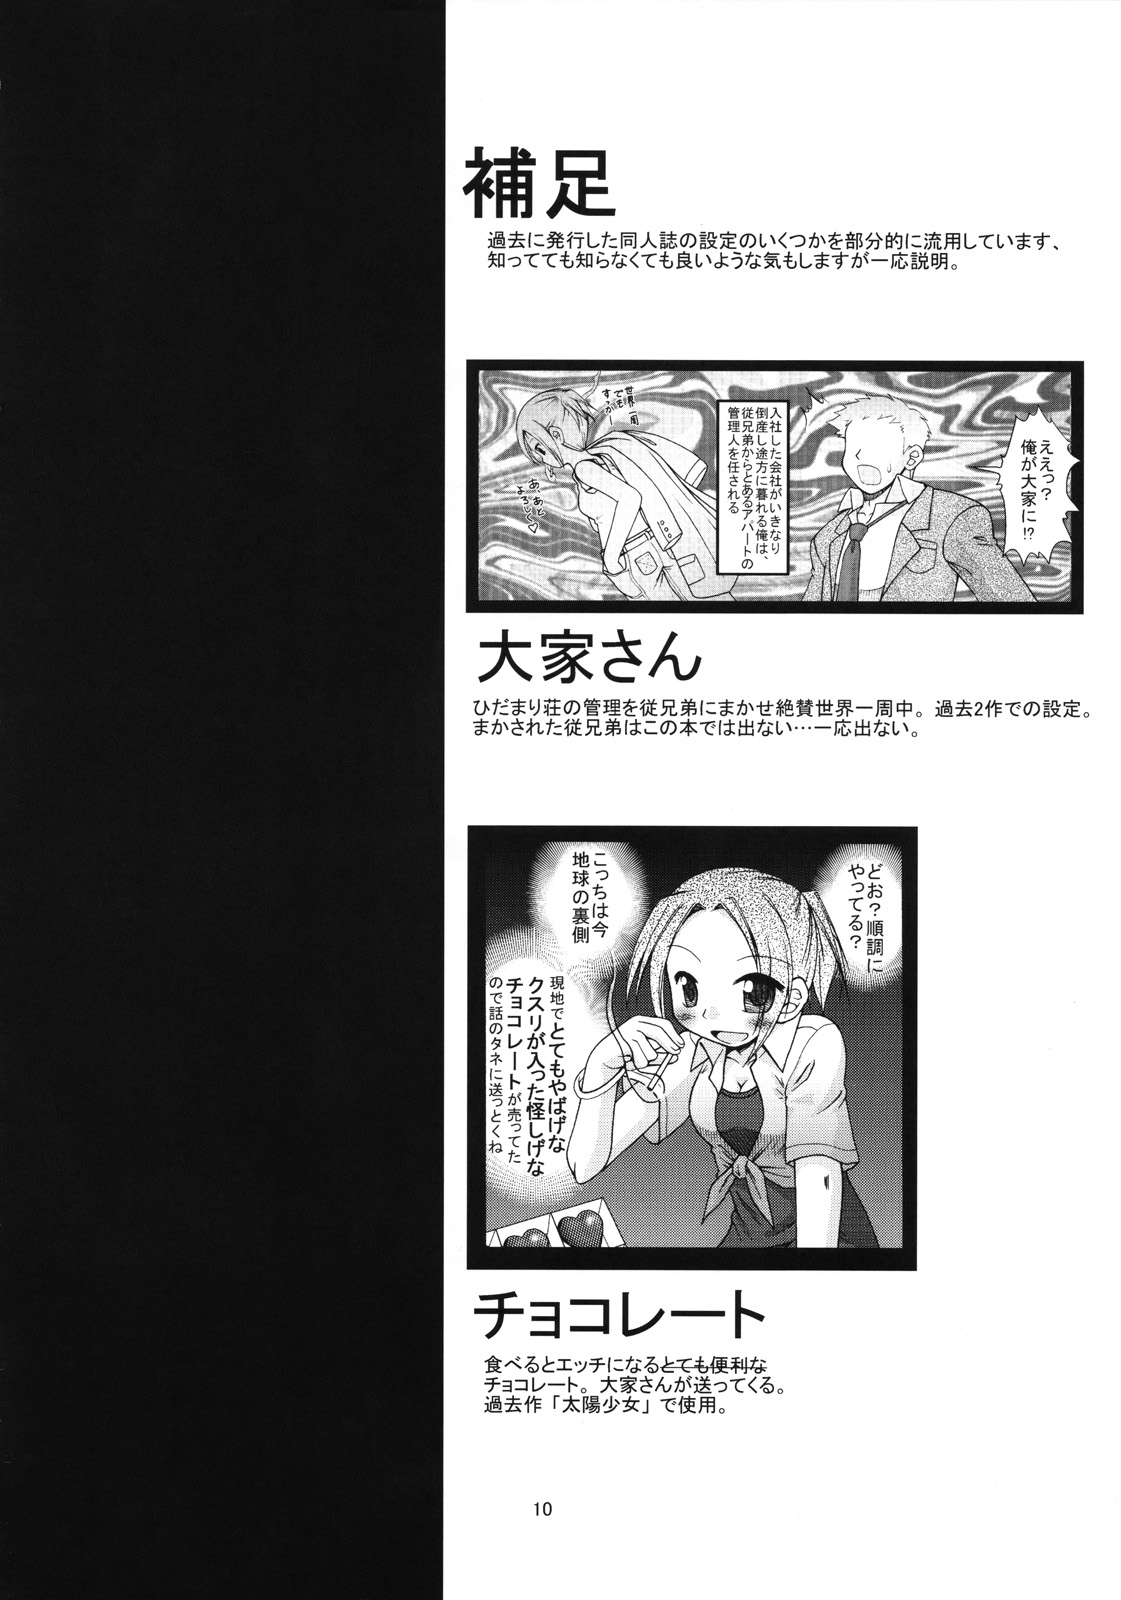 [FESTA. (Yoshitani Motoka)] Bousou Hidamari Tokkyuu (Hidamari Sketch) page 9 full